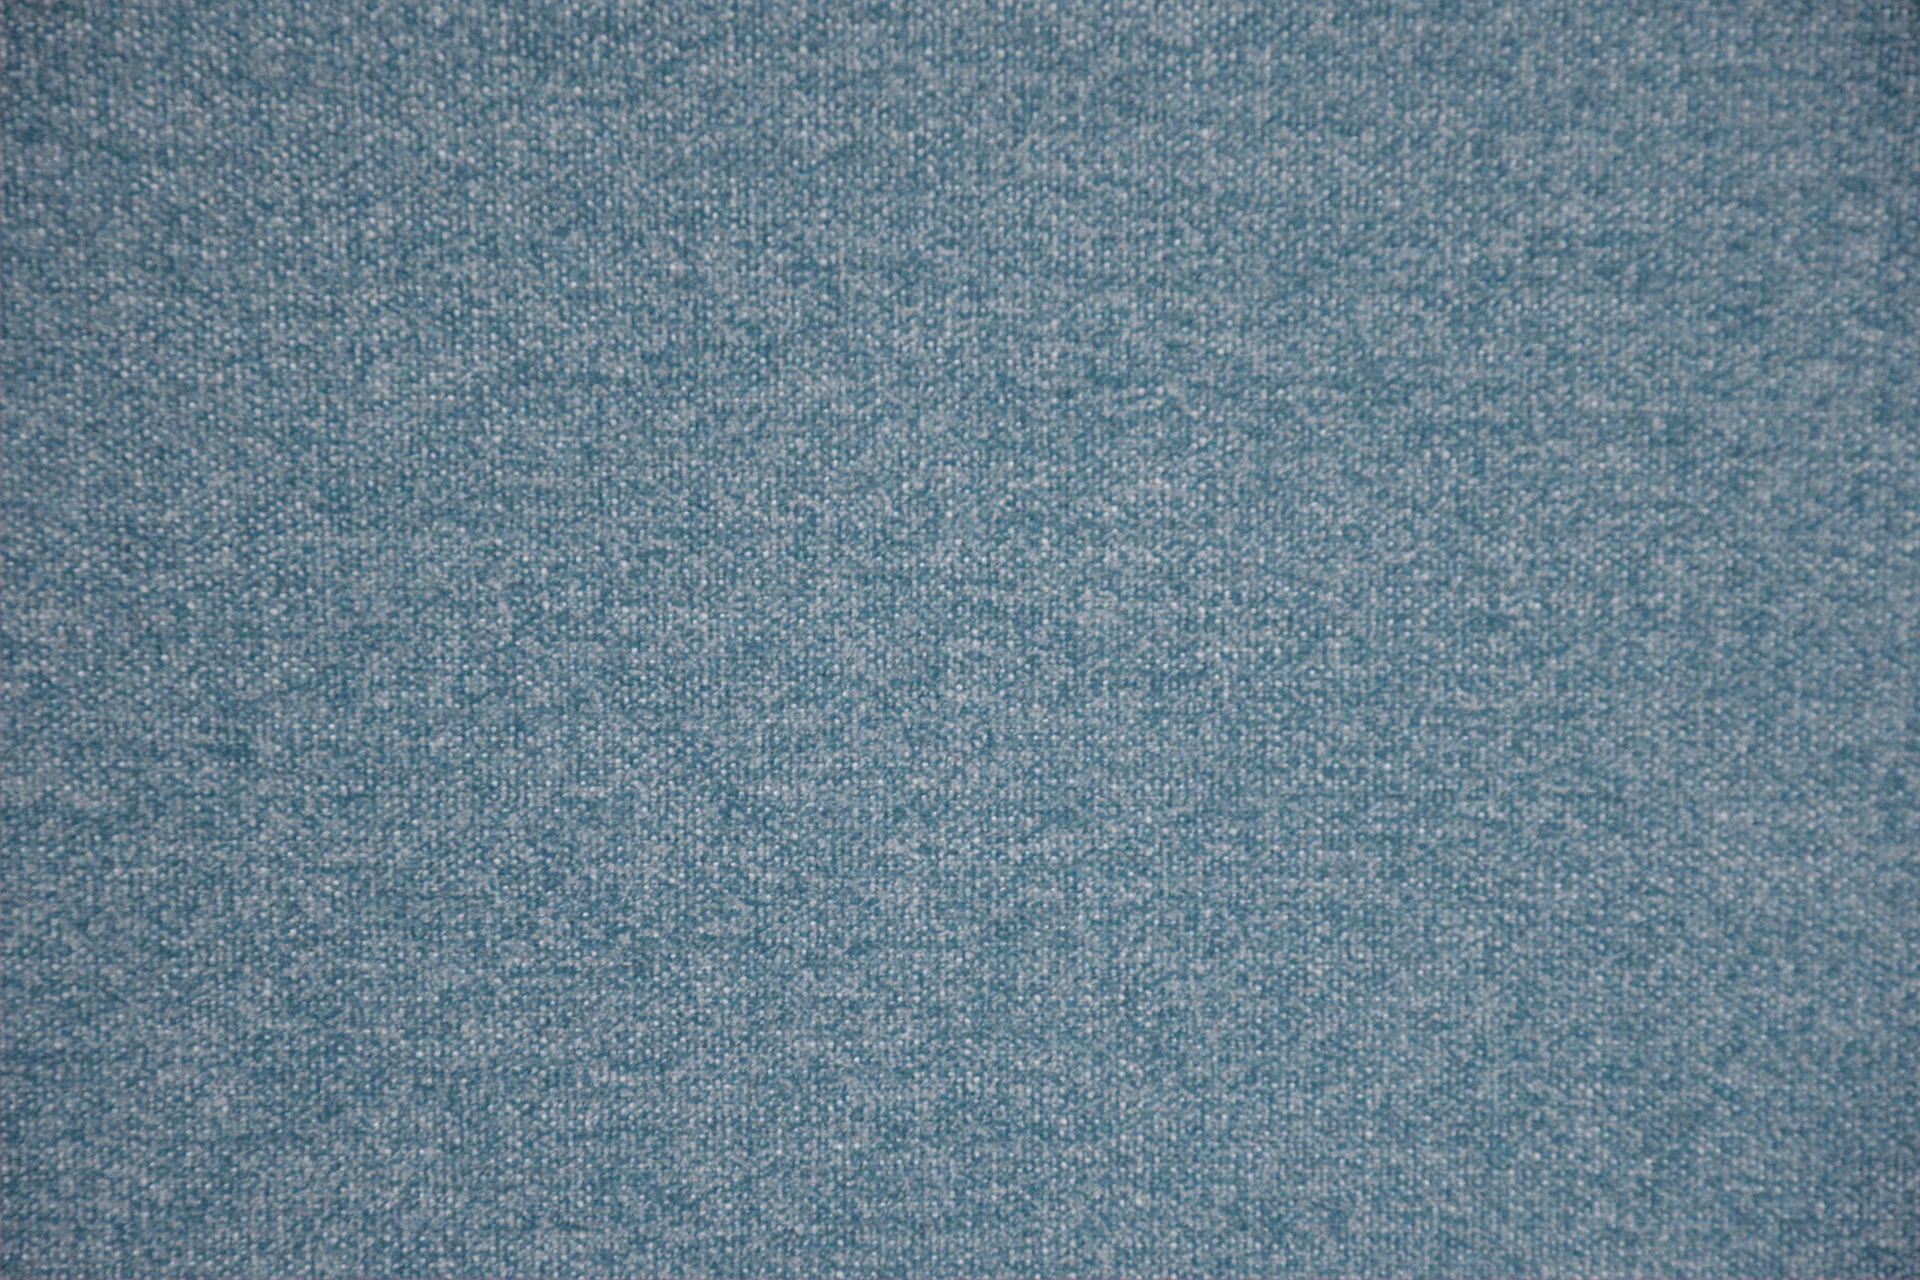 Bogota tissu ameublement faux uni Aquaclean anti-tâche et lavable de Casal, pour chaise, fauteuil, canapé et rideaux, vendu par la rime des matieres, bon plan tissu